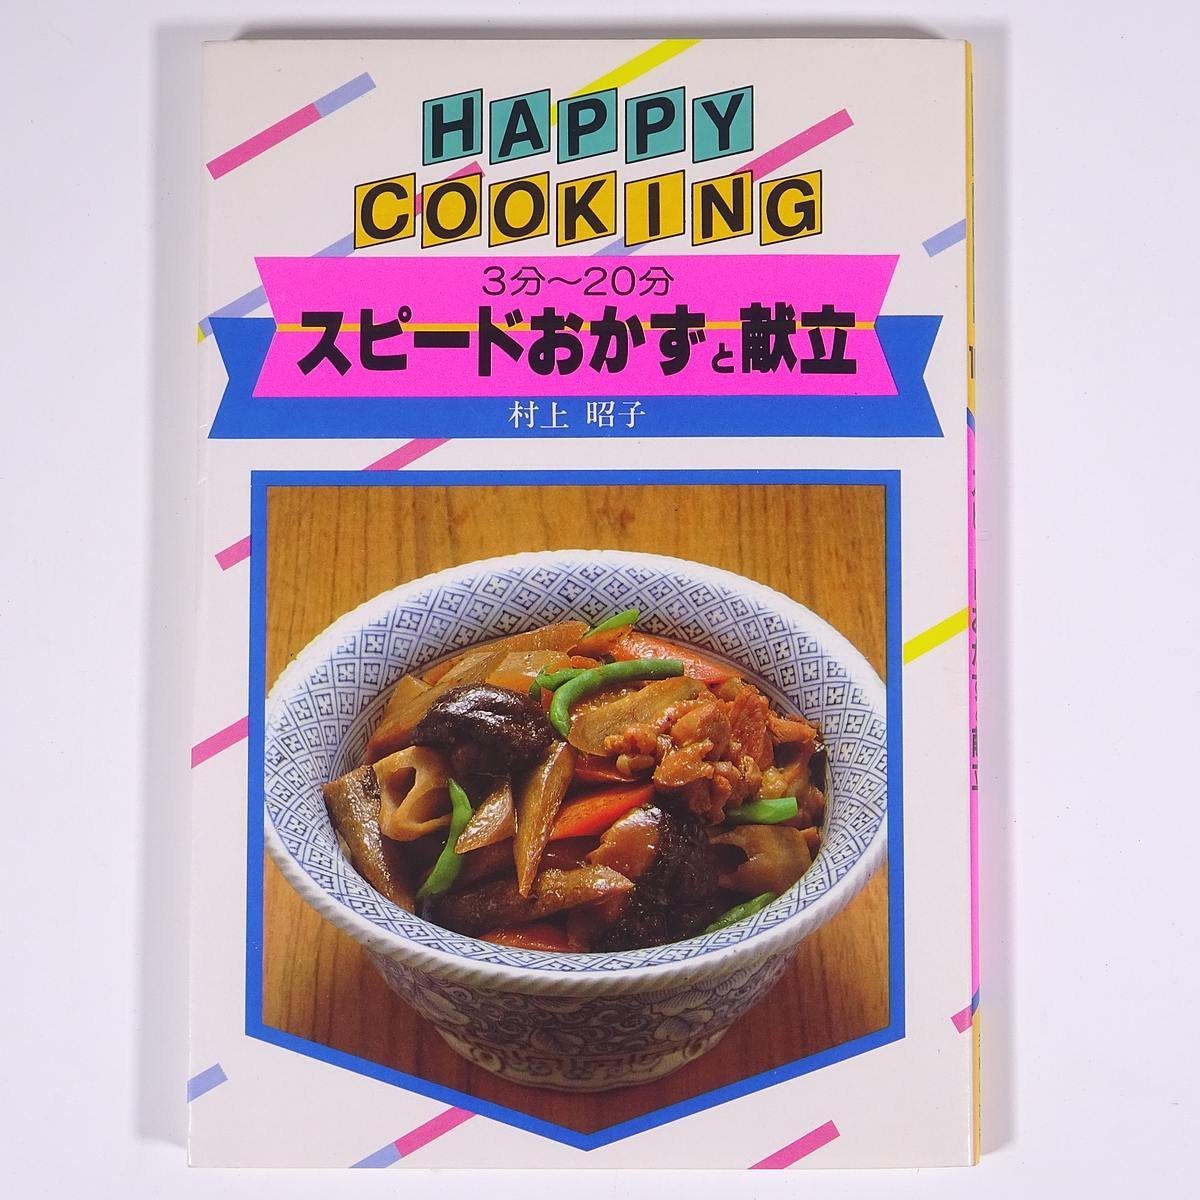  скорость гарнир ...3 минут ~20 минут Мураками ..HAPPY COOKING 102... . фирма 1984 монография кулинария .. рецепт 